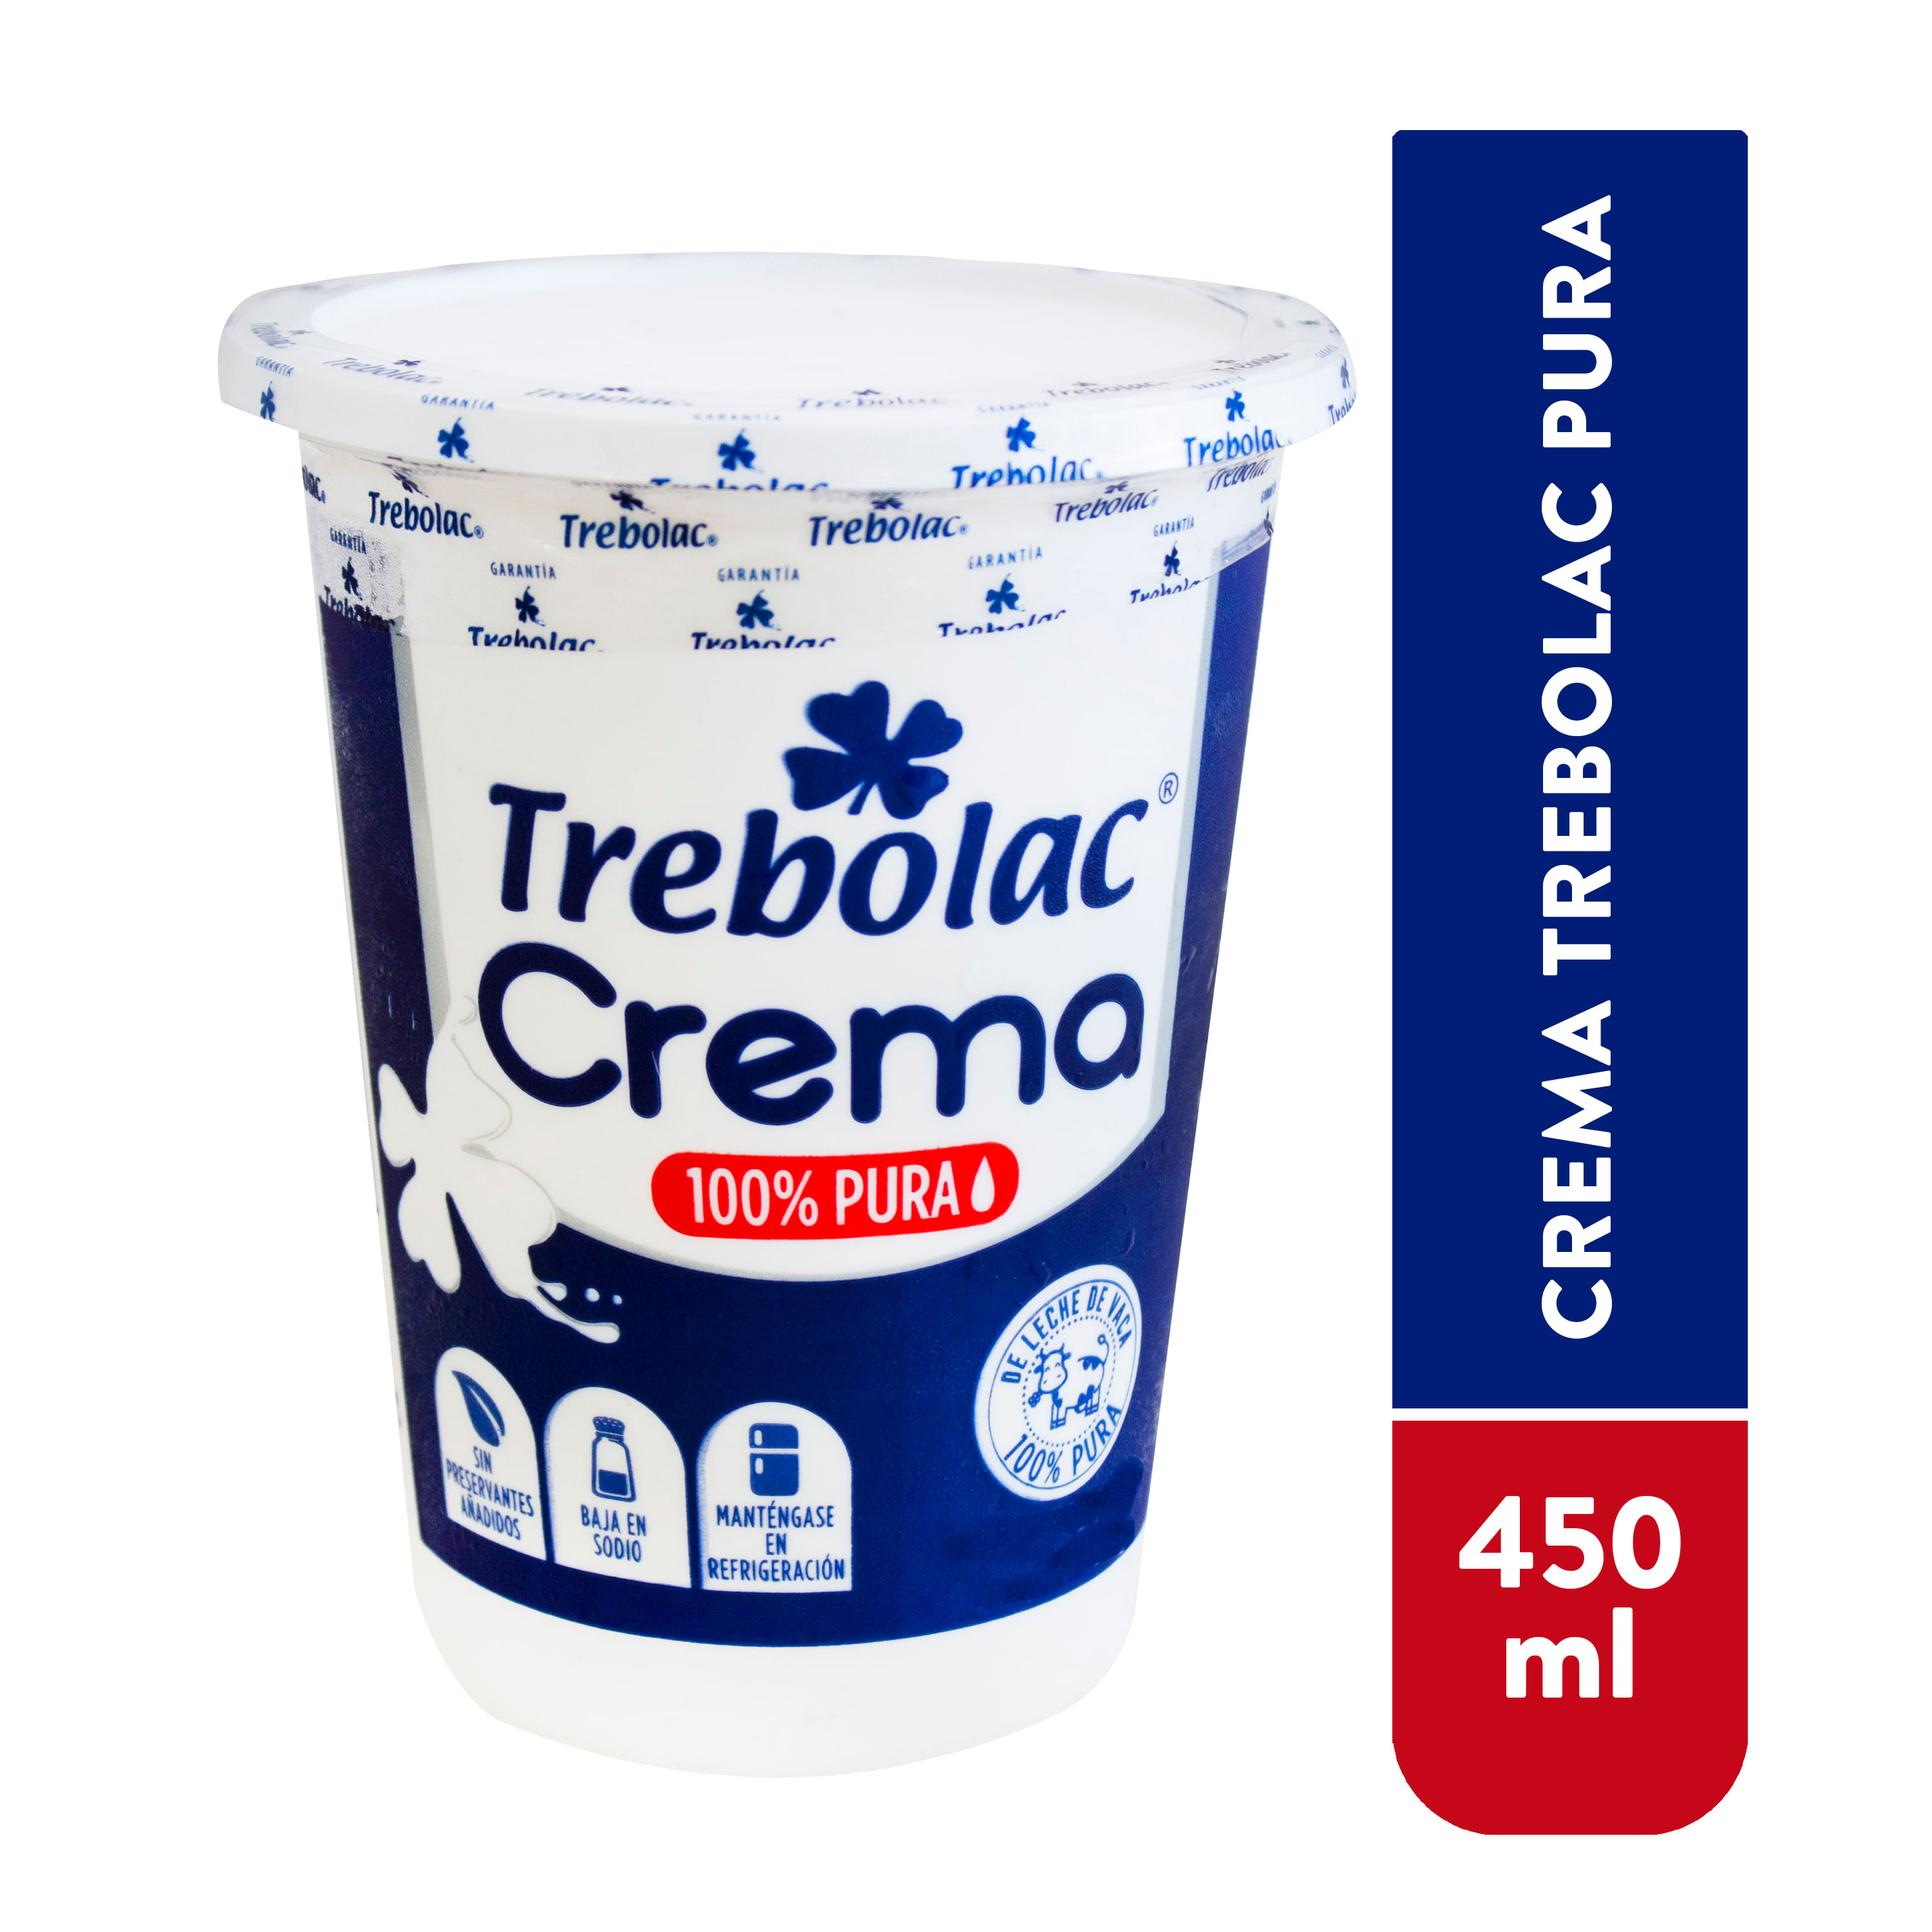 Crema-Trebolac-Pura-450ml-1-29998